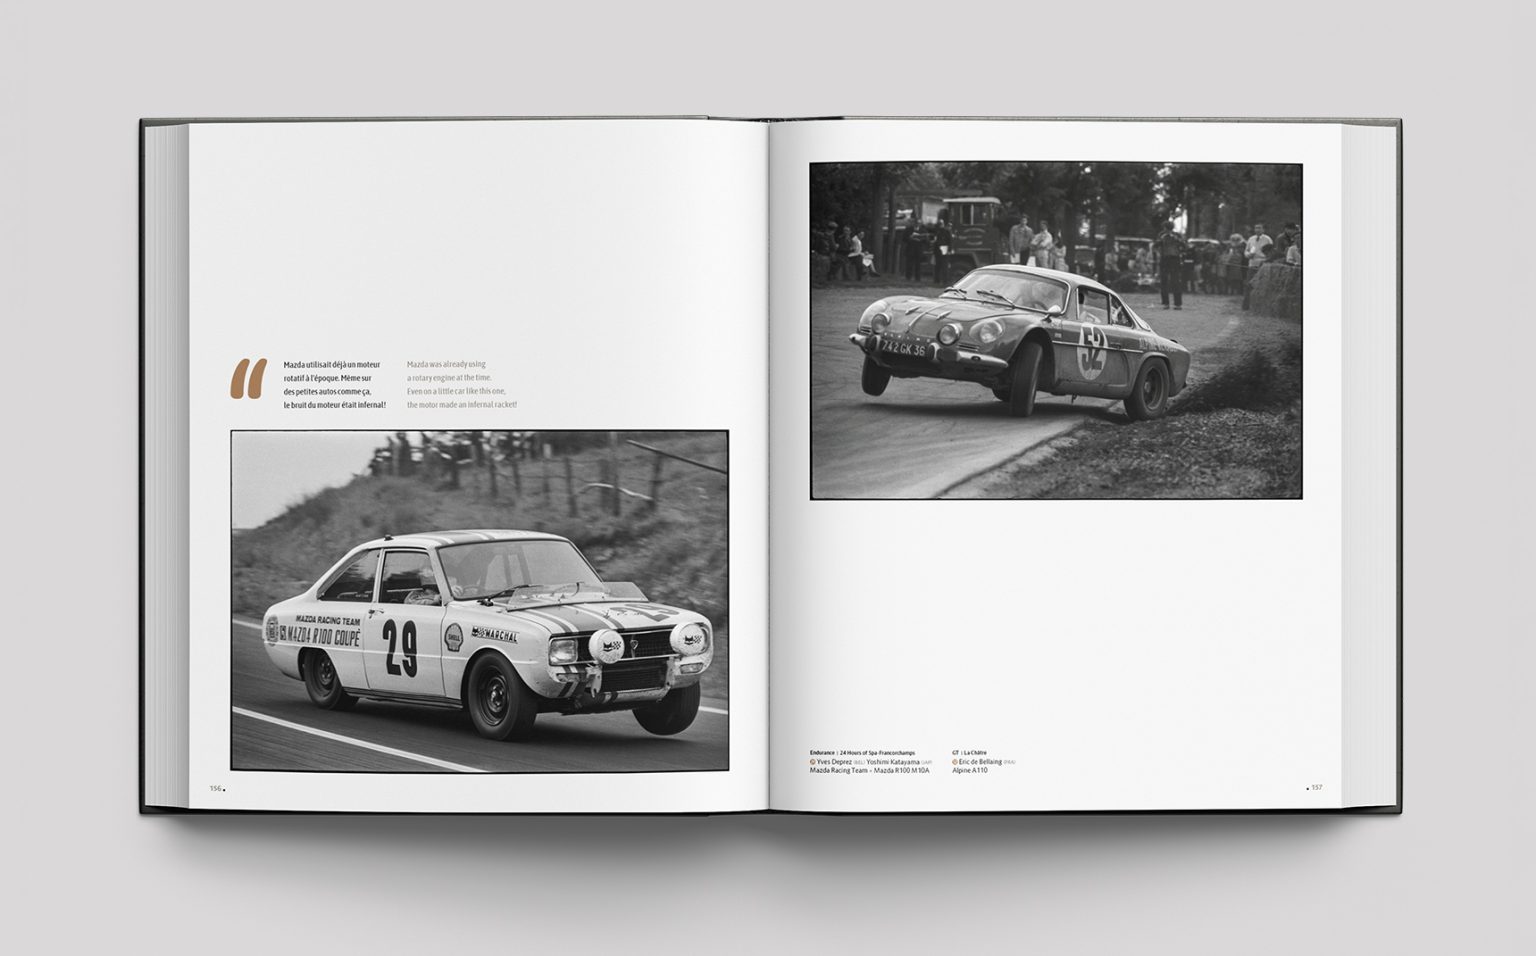 Car Racing 1969